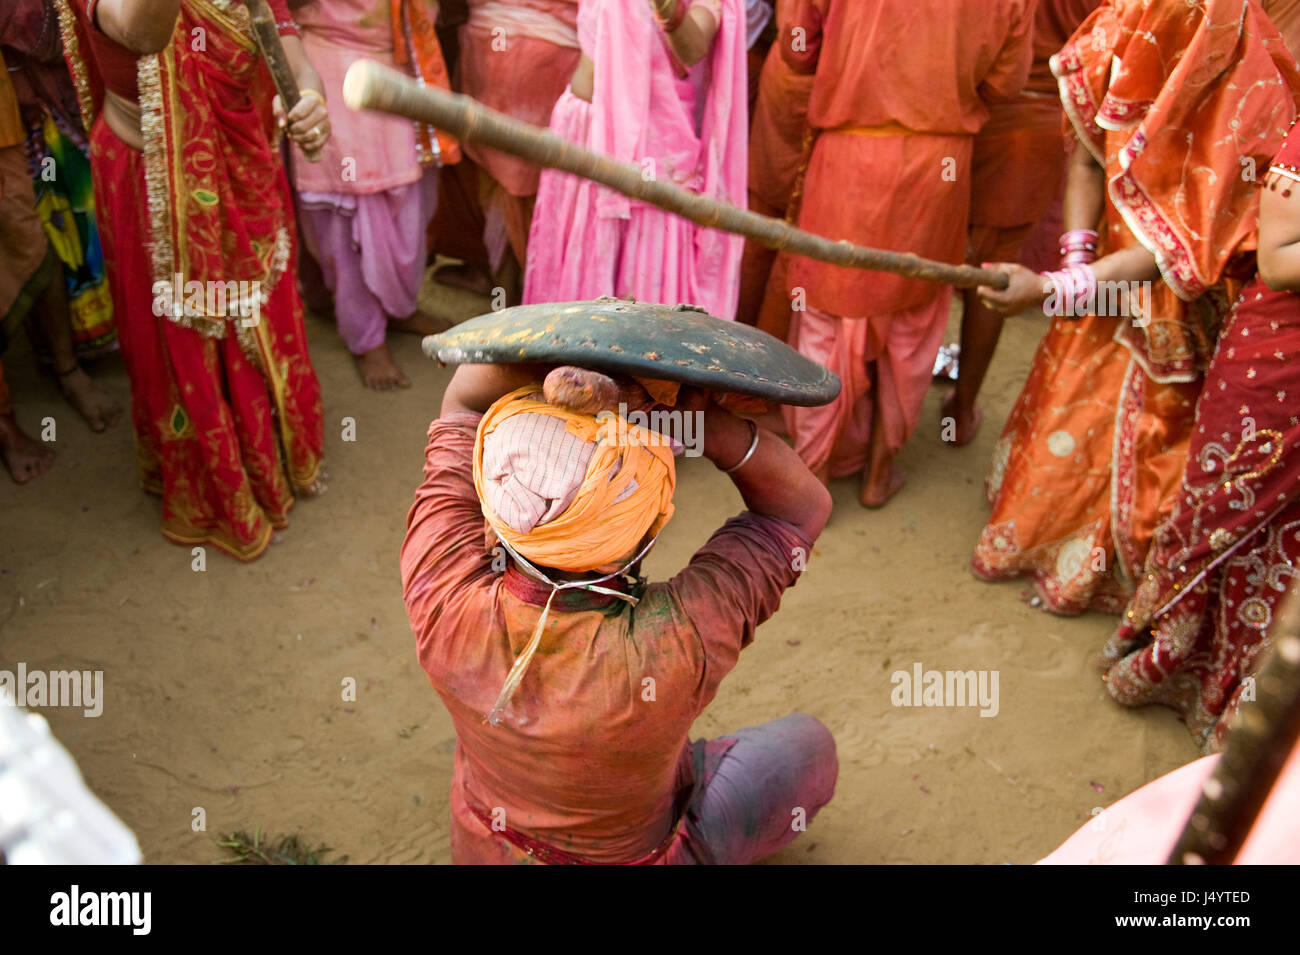 People celebrating lathmar, holi festival, mathura, uttar pradesh, india, asia Stock Photo